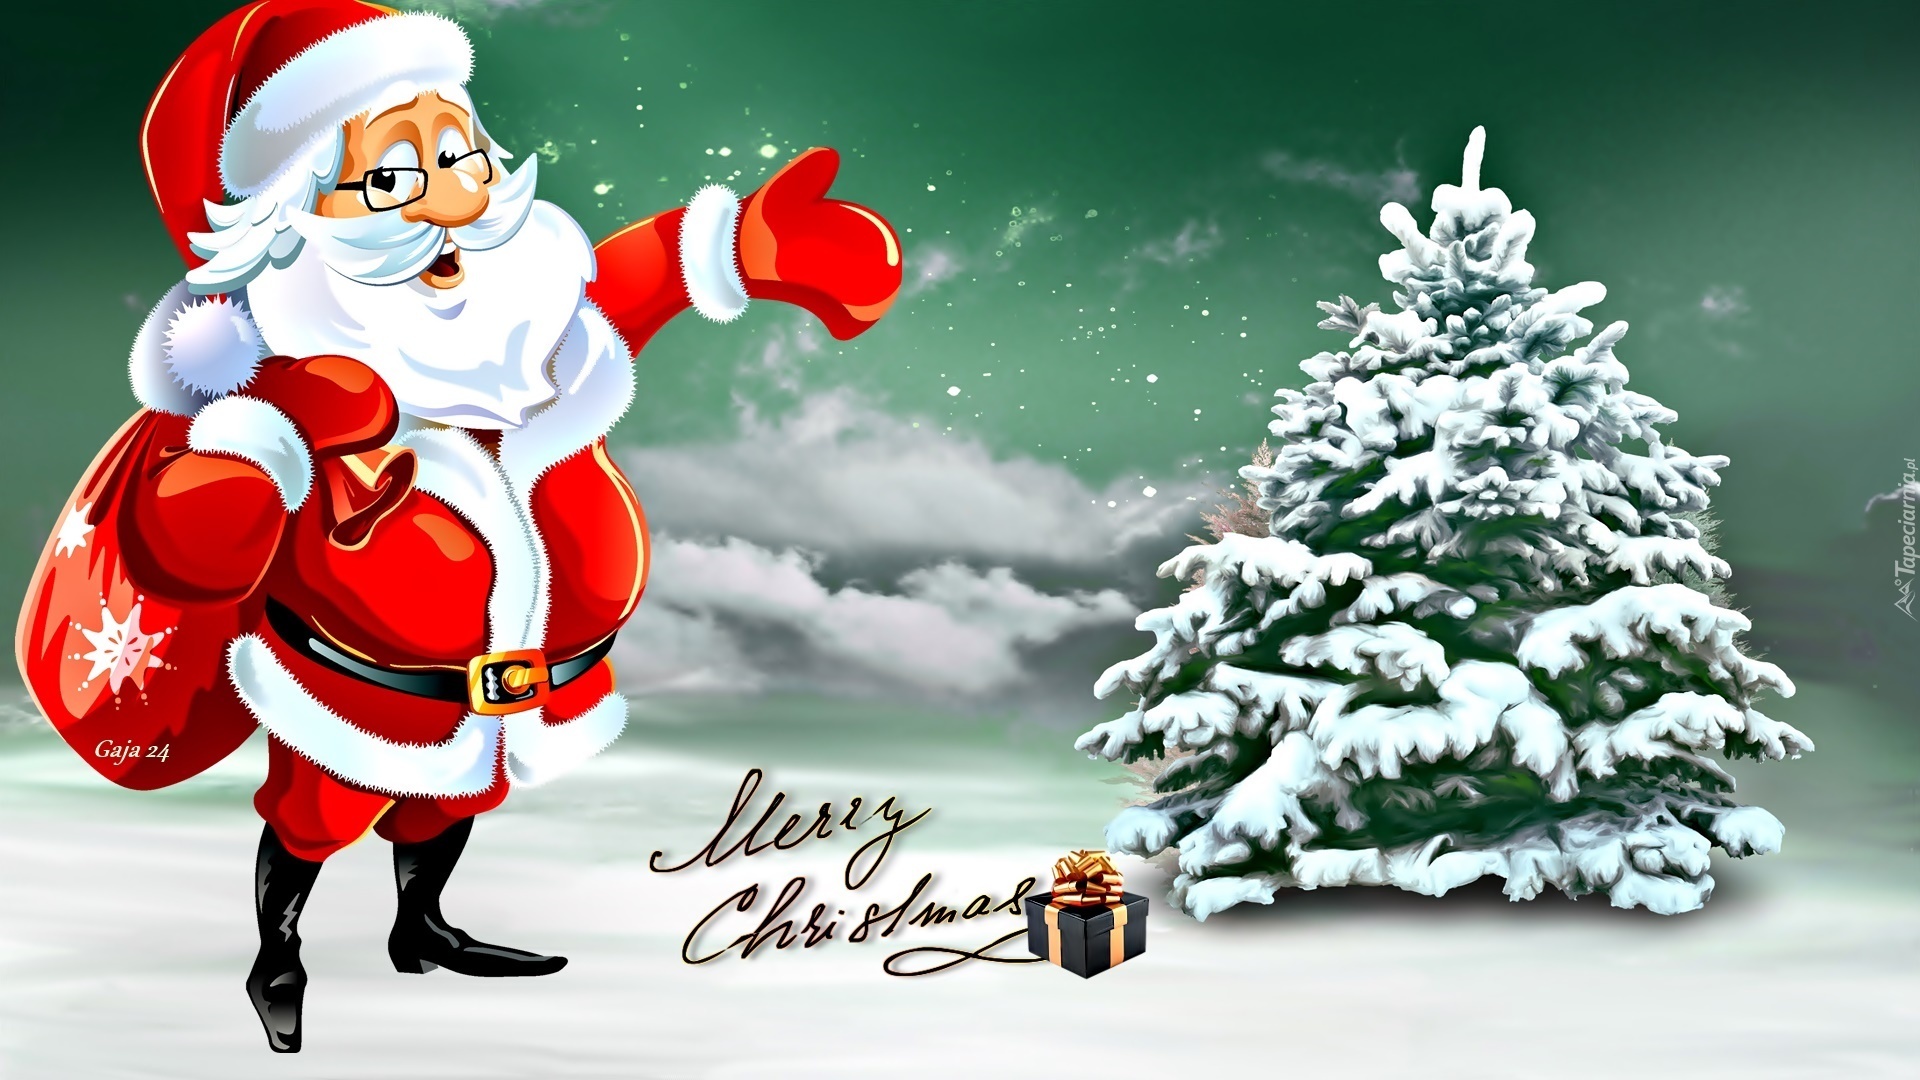 Mikołaj, Zima, Choinka, Boże Narodzenie